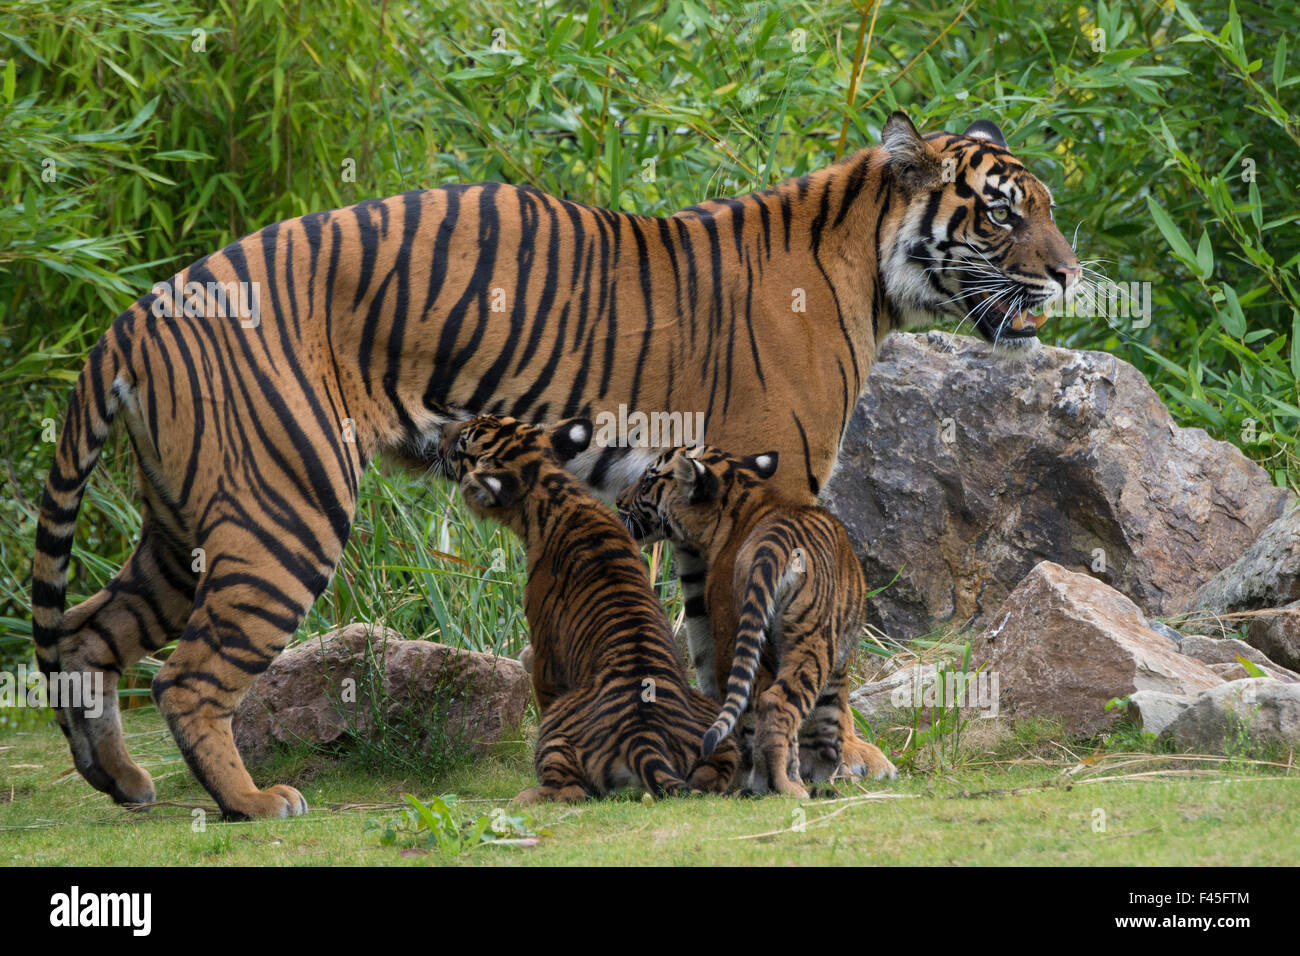 Jeune tigre de Sumatra (Panthera tigris sumatrae), âgée de quatre mois, l'allaitement de sa mère, captive, se produit dans la région de Sumatra, Indonésie Banque D'Images